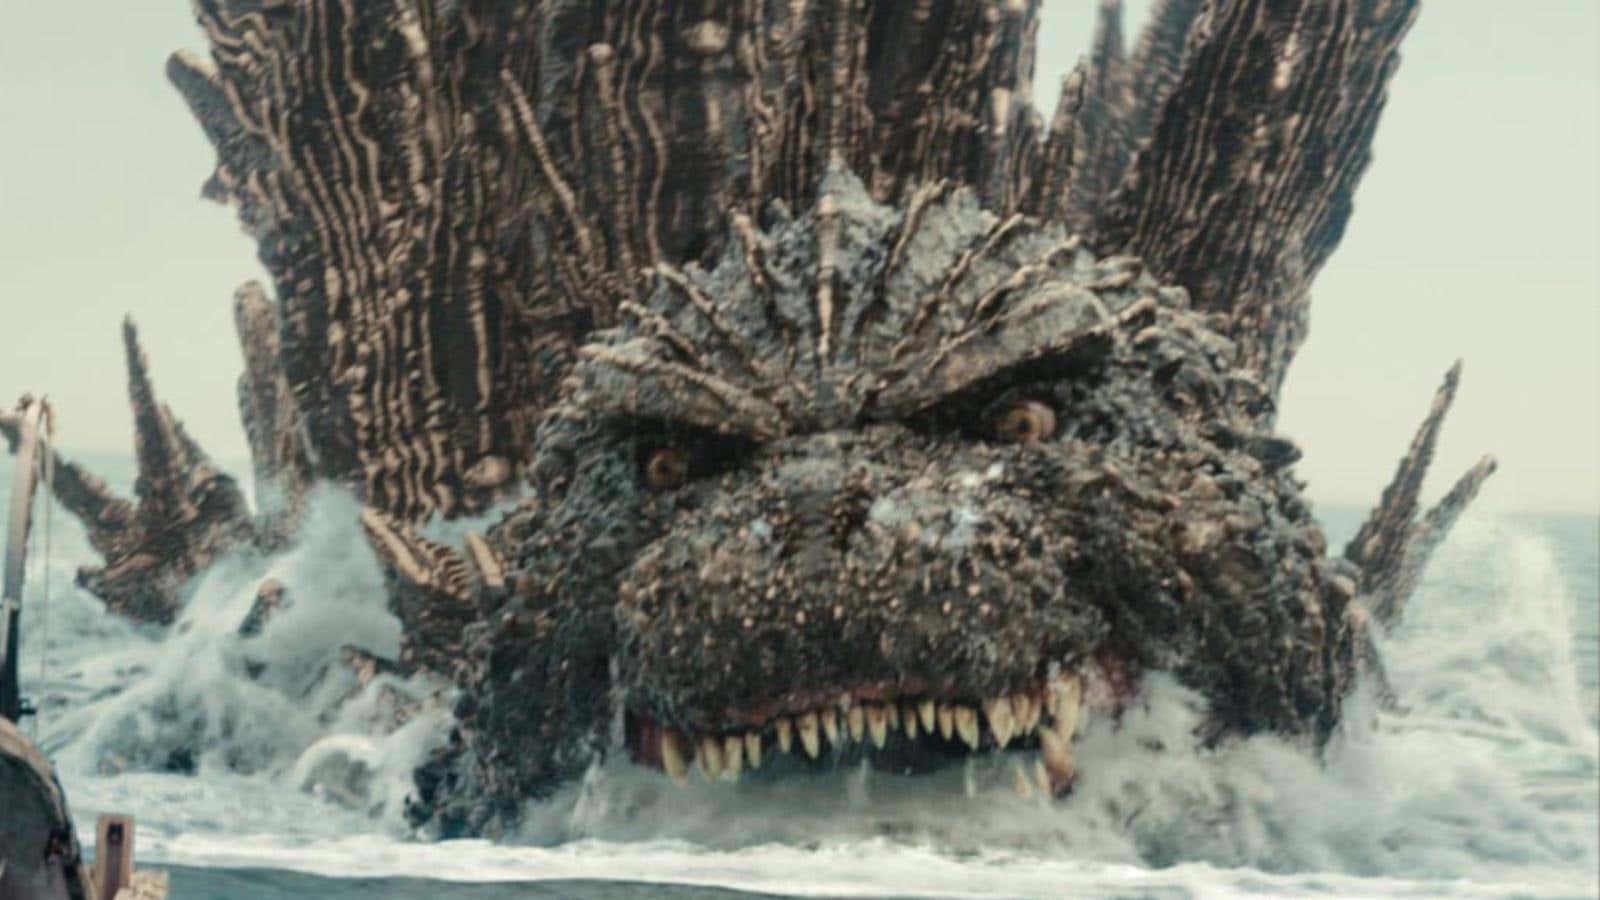 Godzilla Minus One, Oscar Kazanmasıyla Kaiju Tarihine Yazdı başlıklı makale için resim